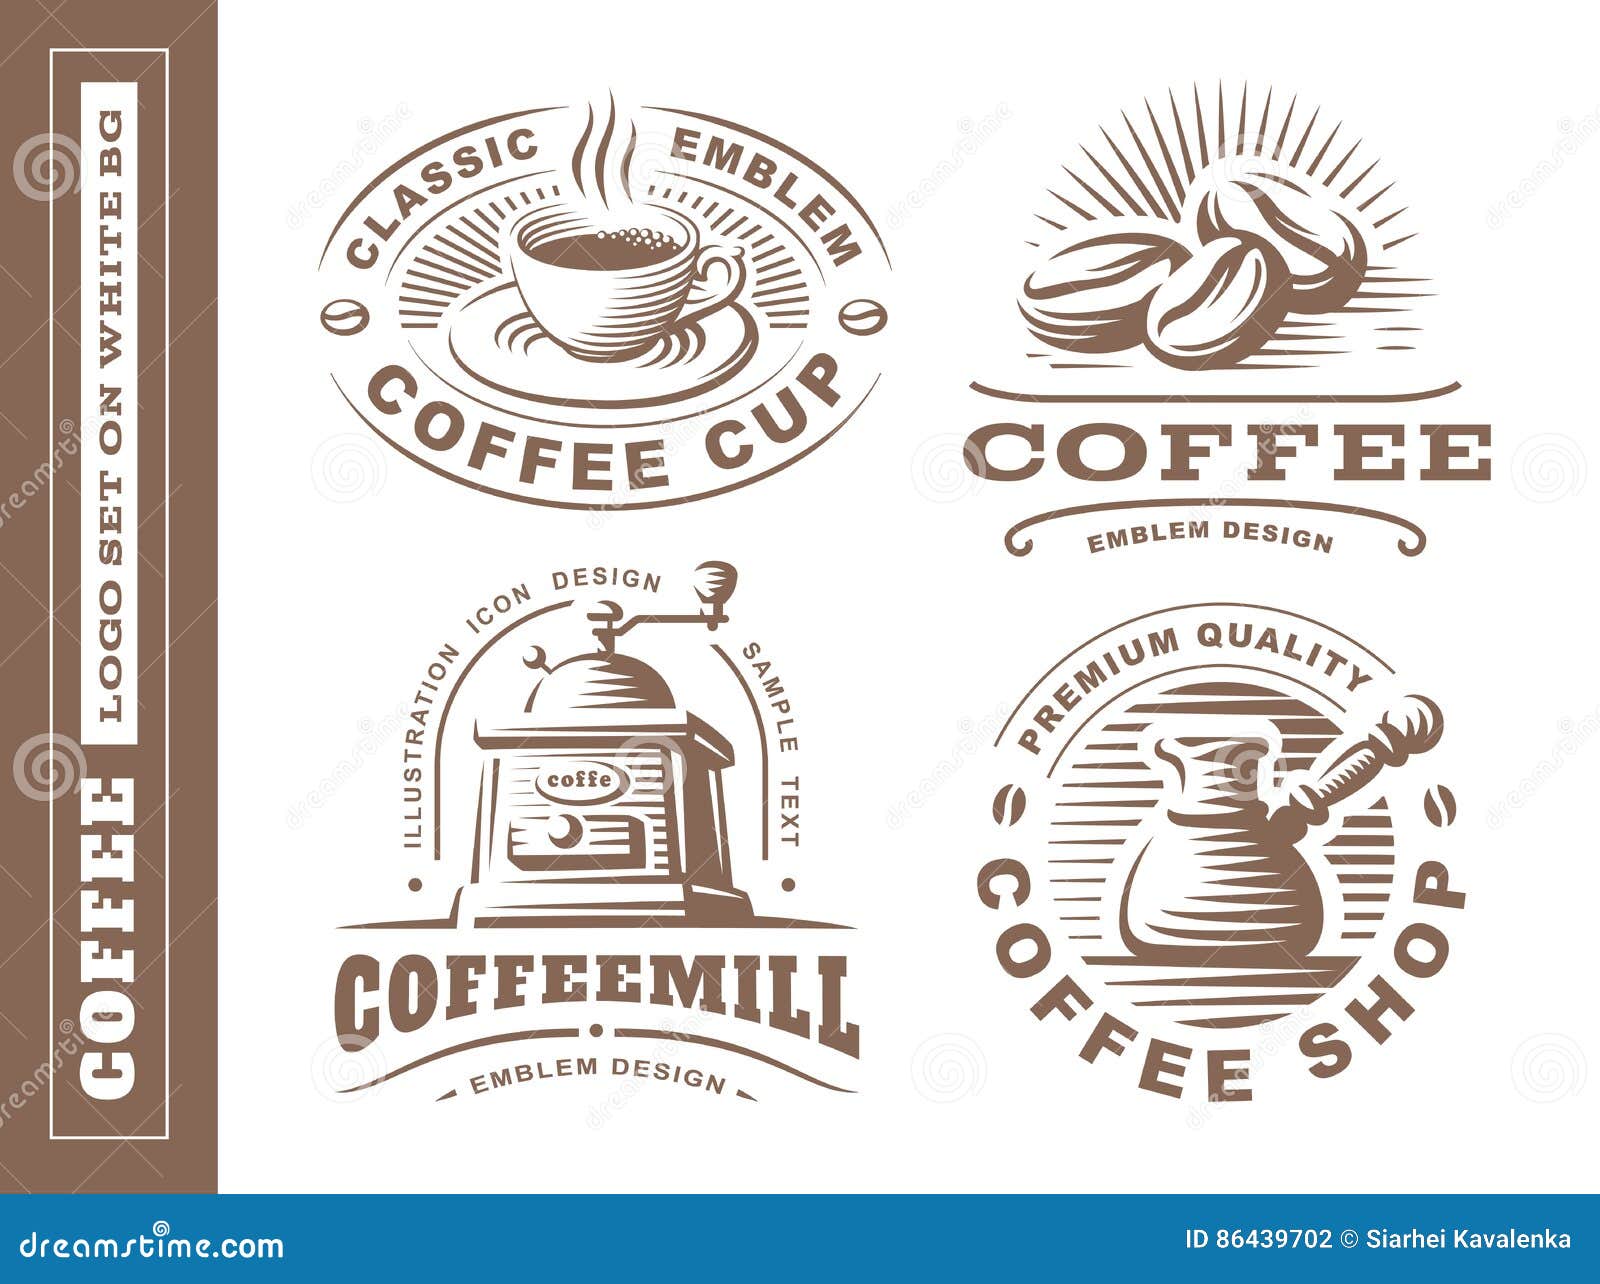 coffee logo -  , emblem set on white background